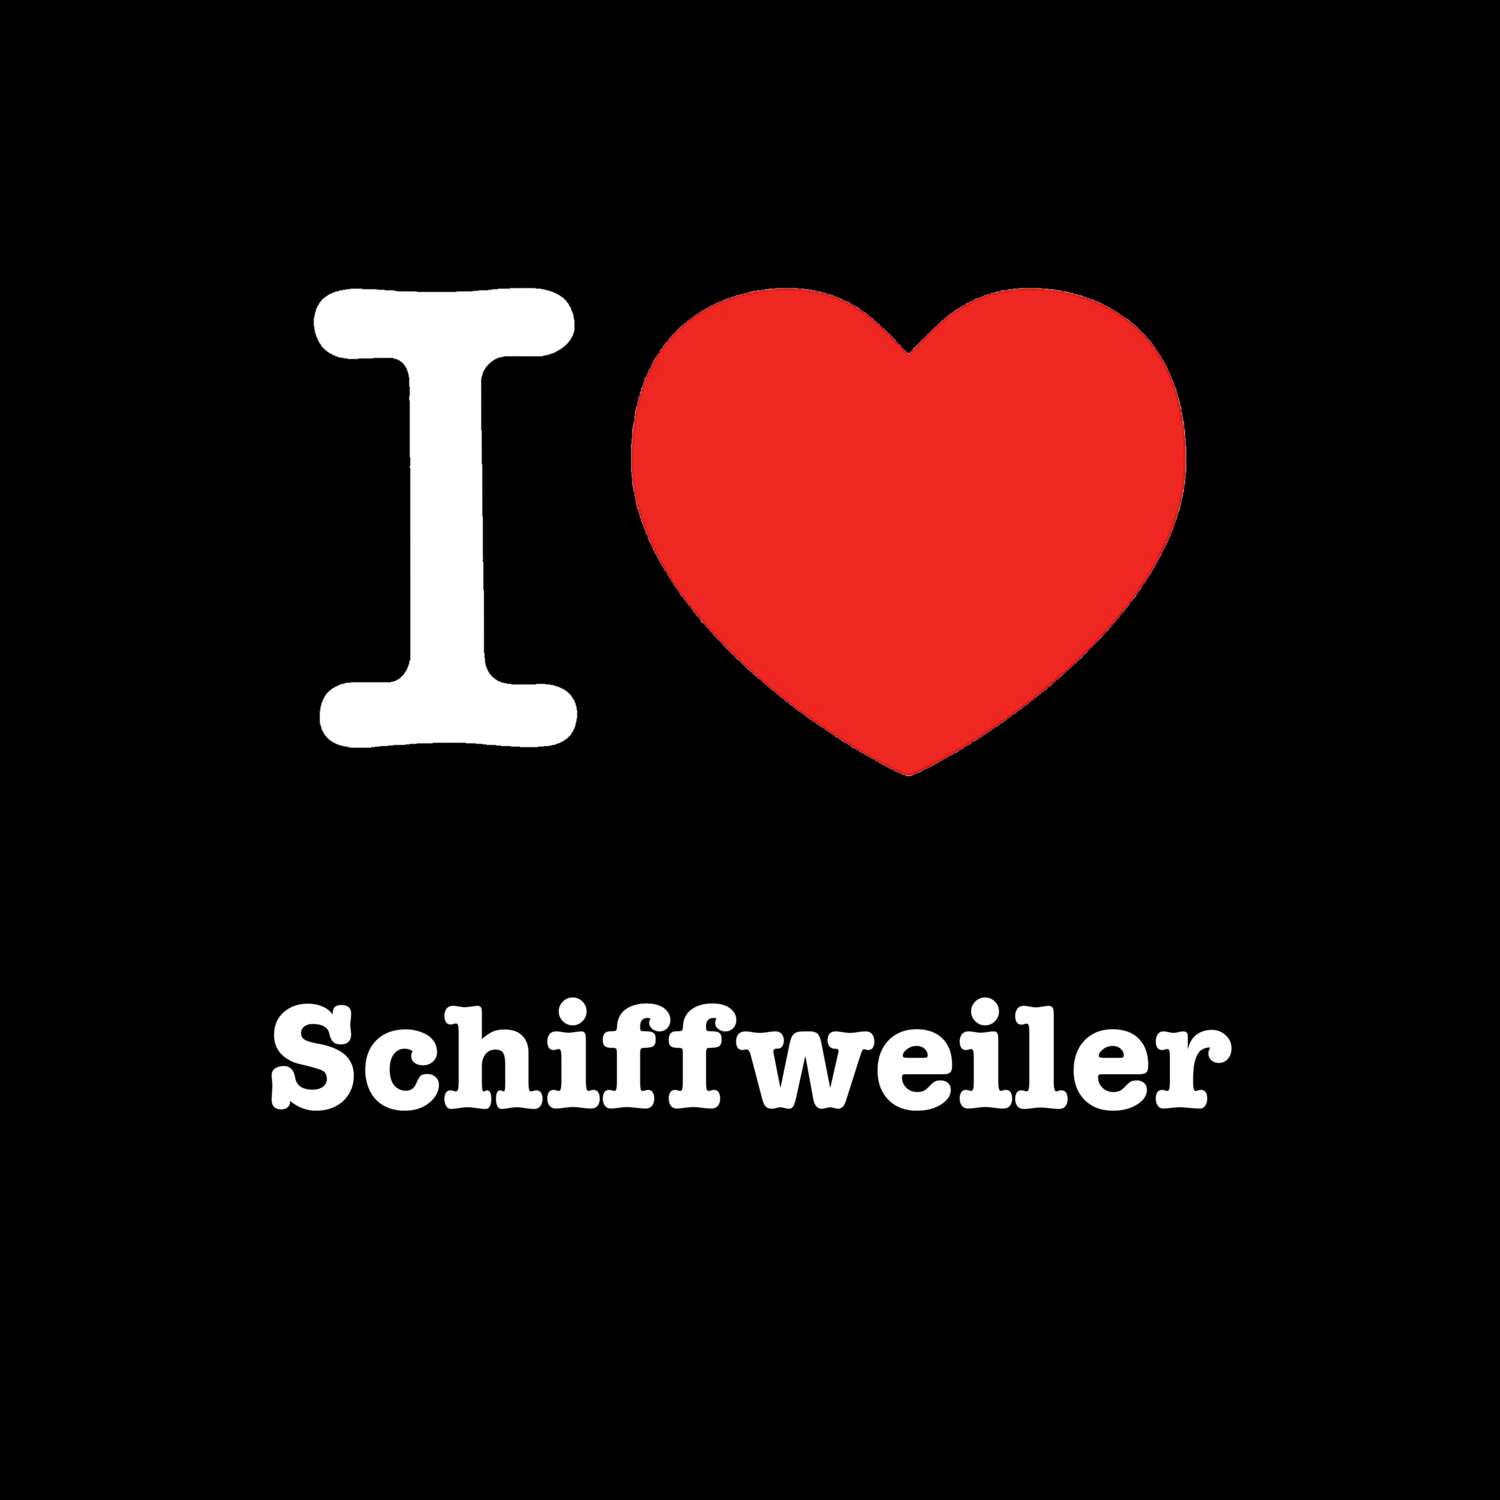 Schiffweiler T-Shirt »I love«